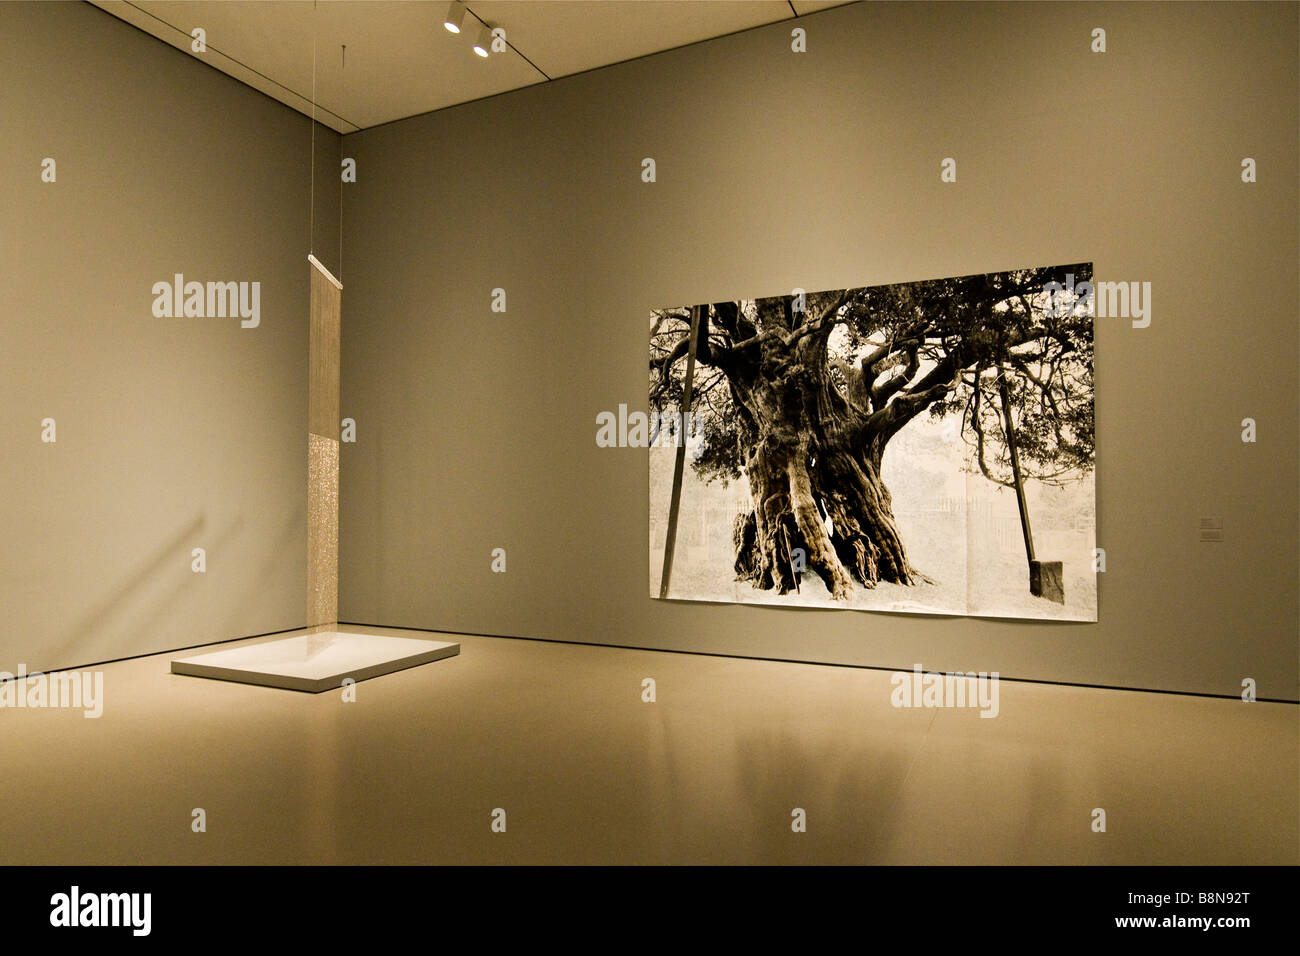 Una exposición fotográfica de un árbol, el museo de arte moderno. Foto de stock